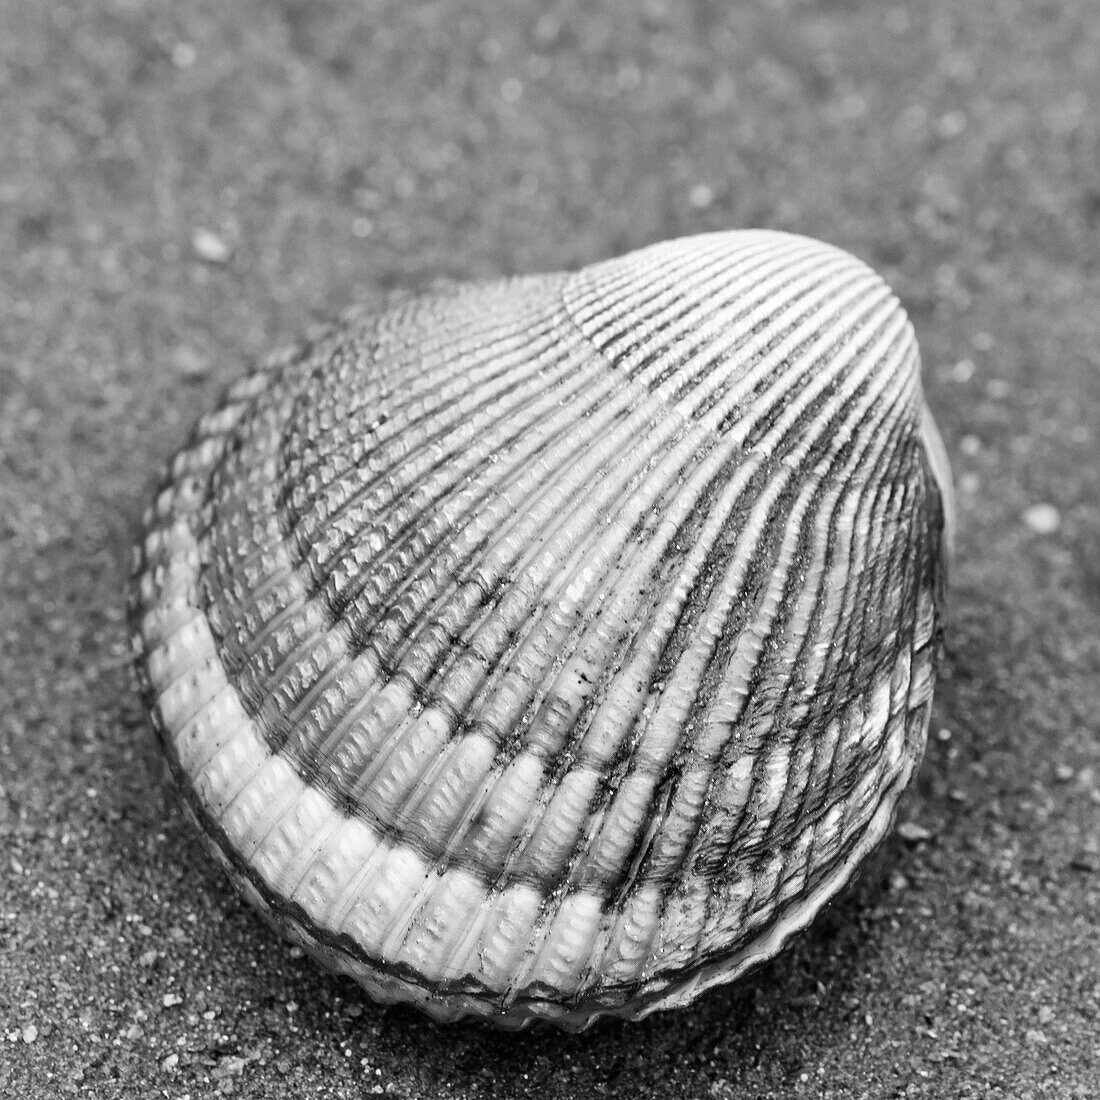 Alaska, Ketchikan, cockle shell on beach.